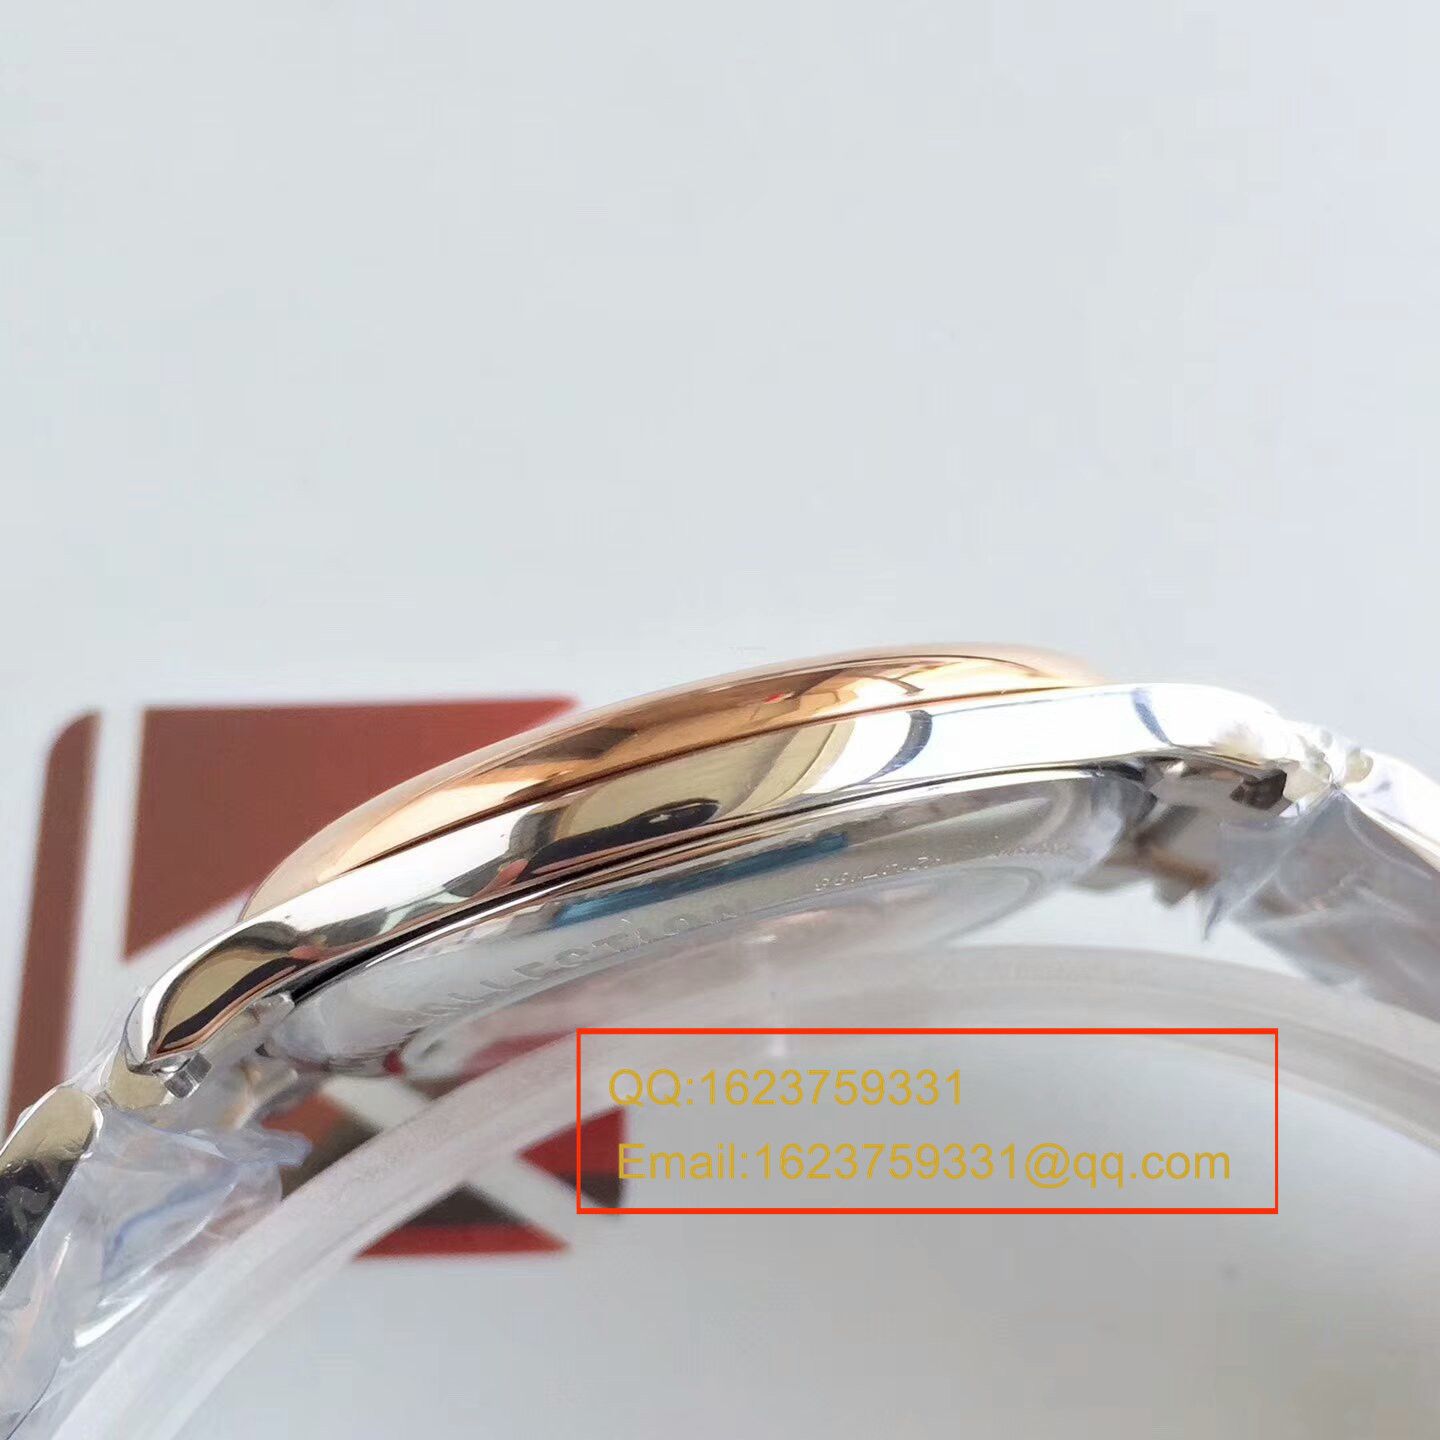 【KZ一比一顶级复刻手表】浪琴名匠系列L2.628.8.78.3间玫瑰金钢带版本腕表 